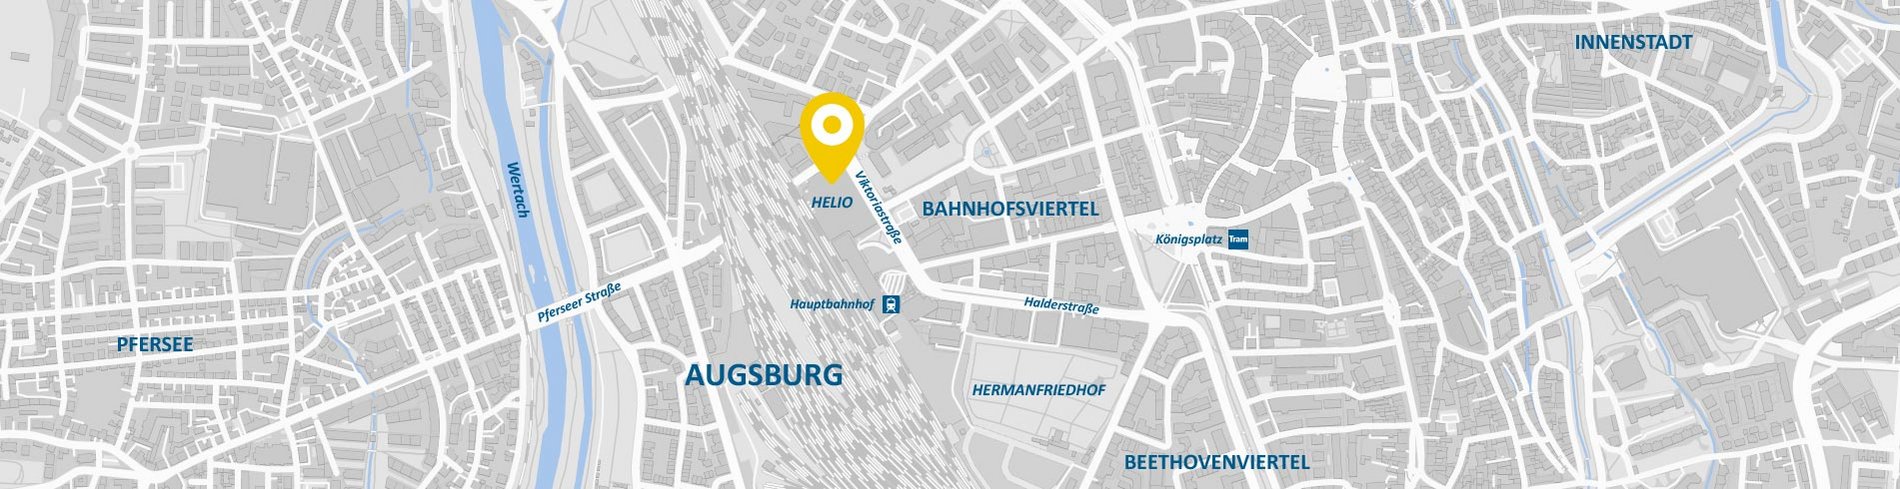 Stadtkarte AllDent Augsburg